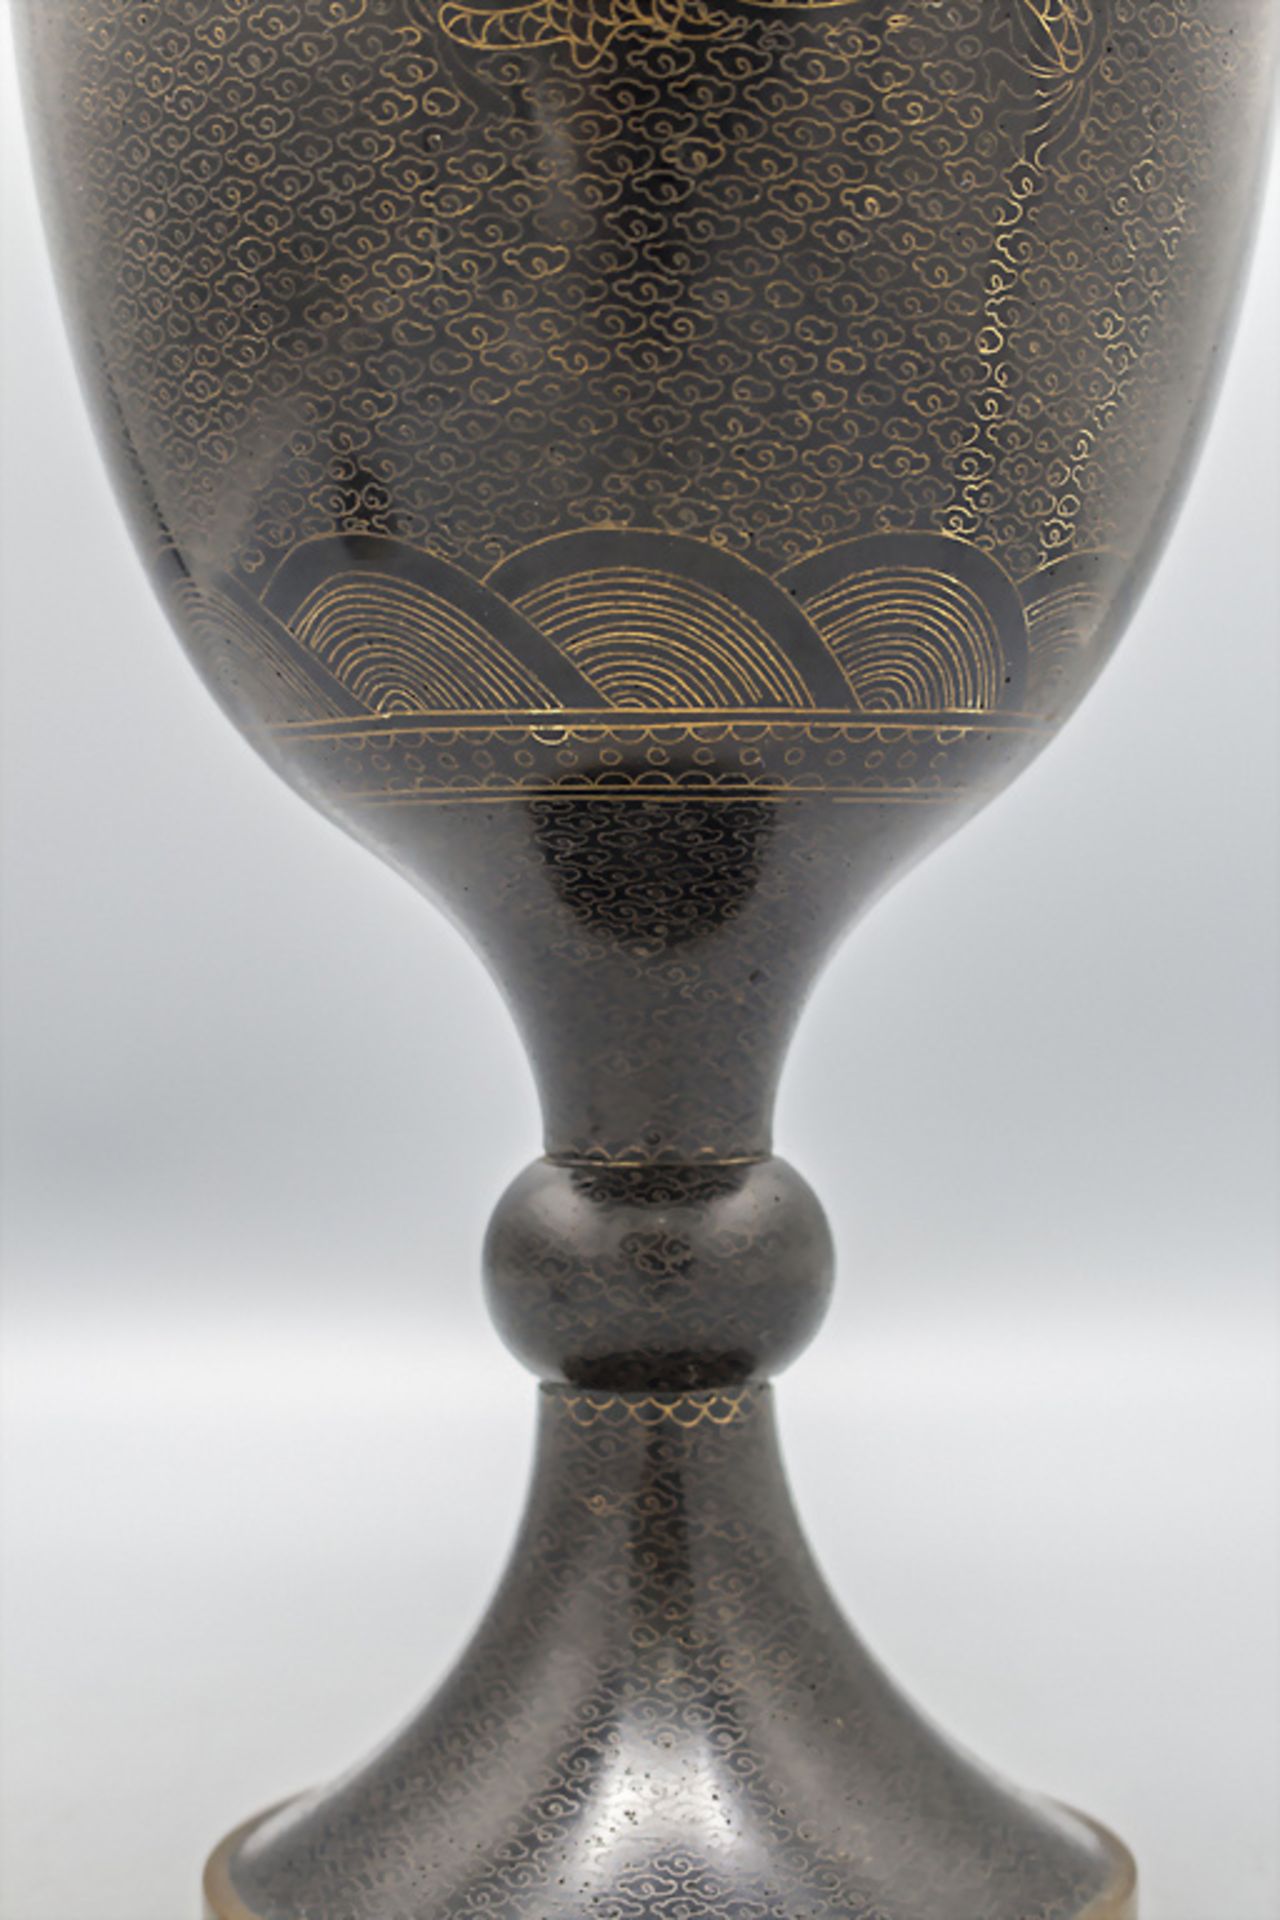 Cloisonné-Deckelvase / A cloisonné lidded vase, China, späte Qing Dynastie (1644-1911) - Bild 6 aus 6